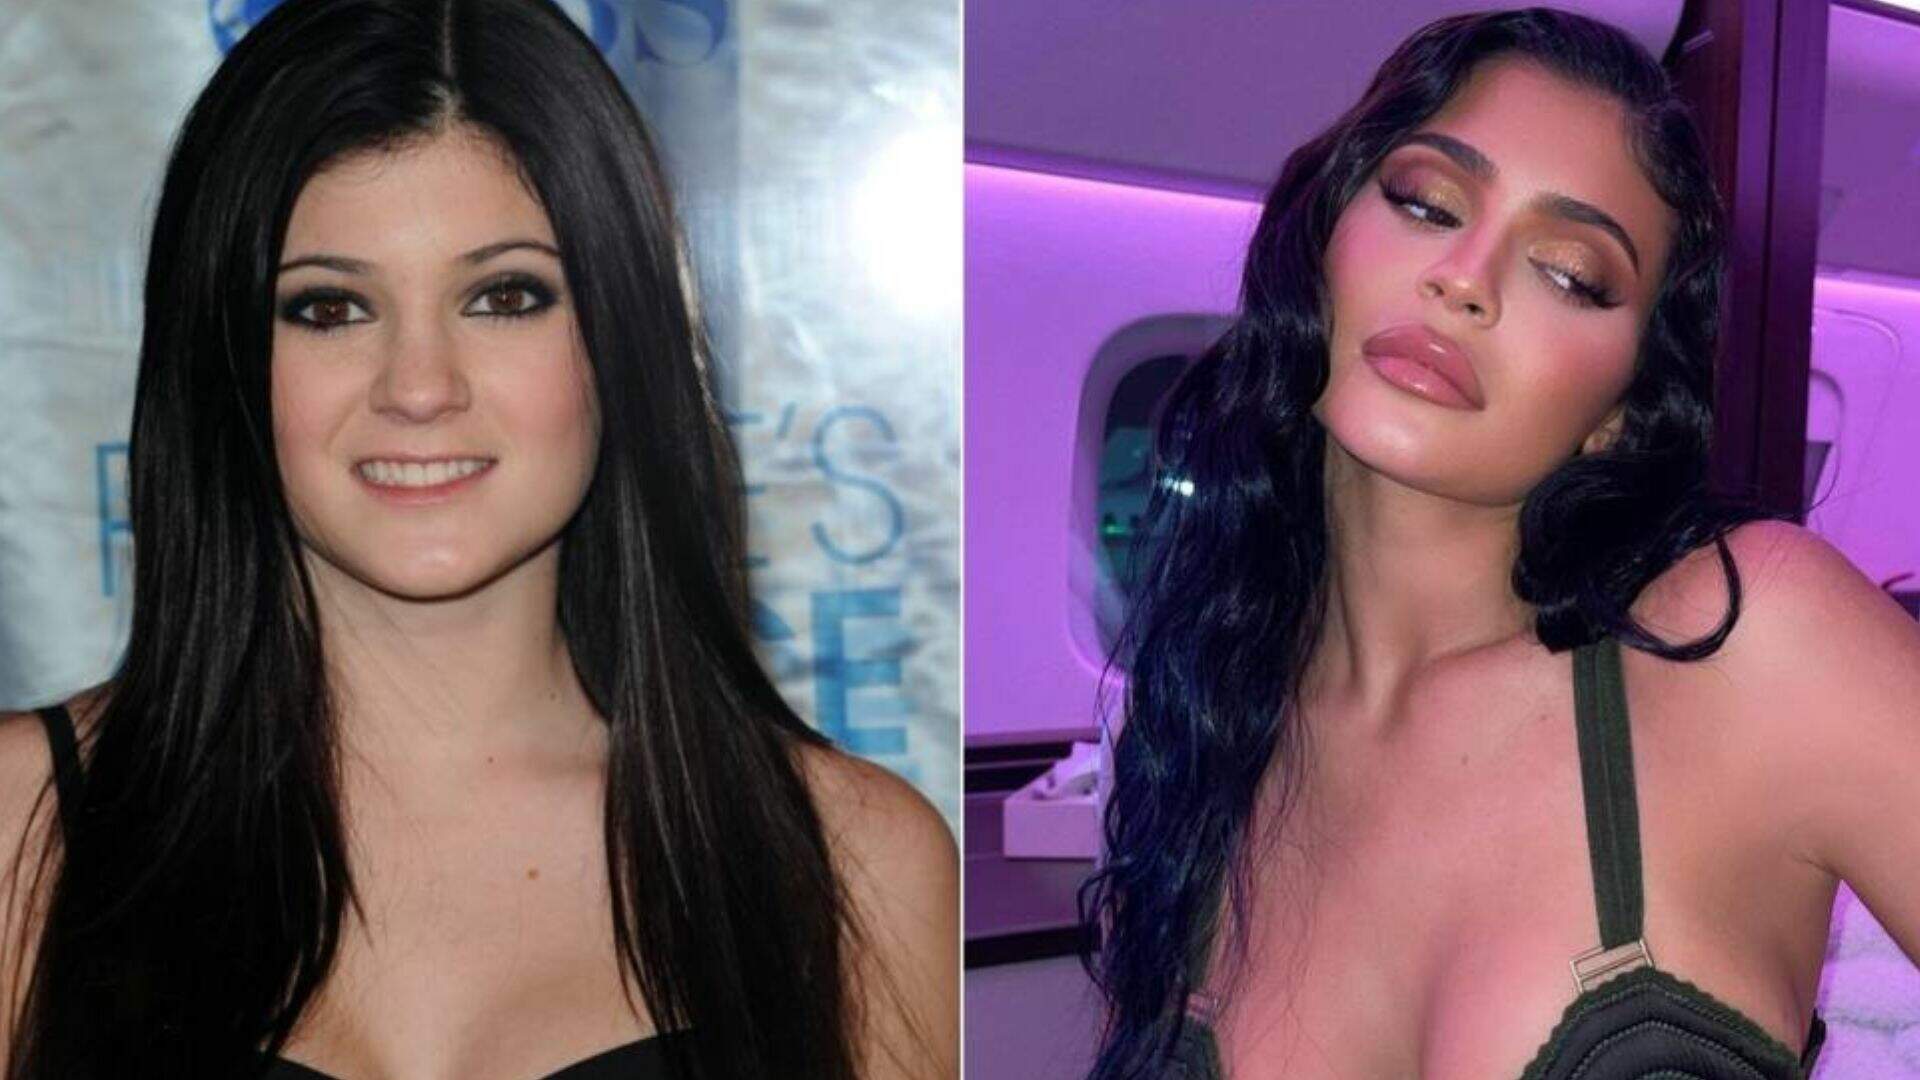 Kylie Jenner nega ter feito cirurgias plásticas por insegurança: “Sempre fui a mais confiante” - Metropolitana FM